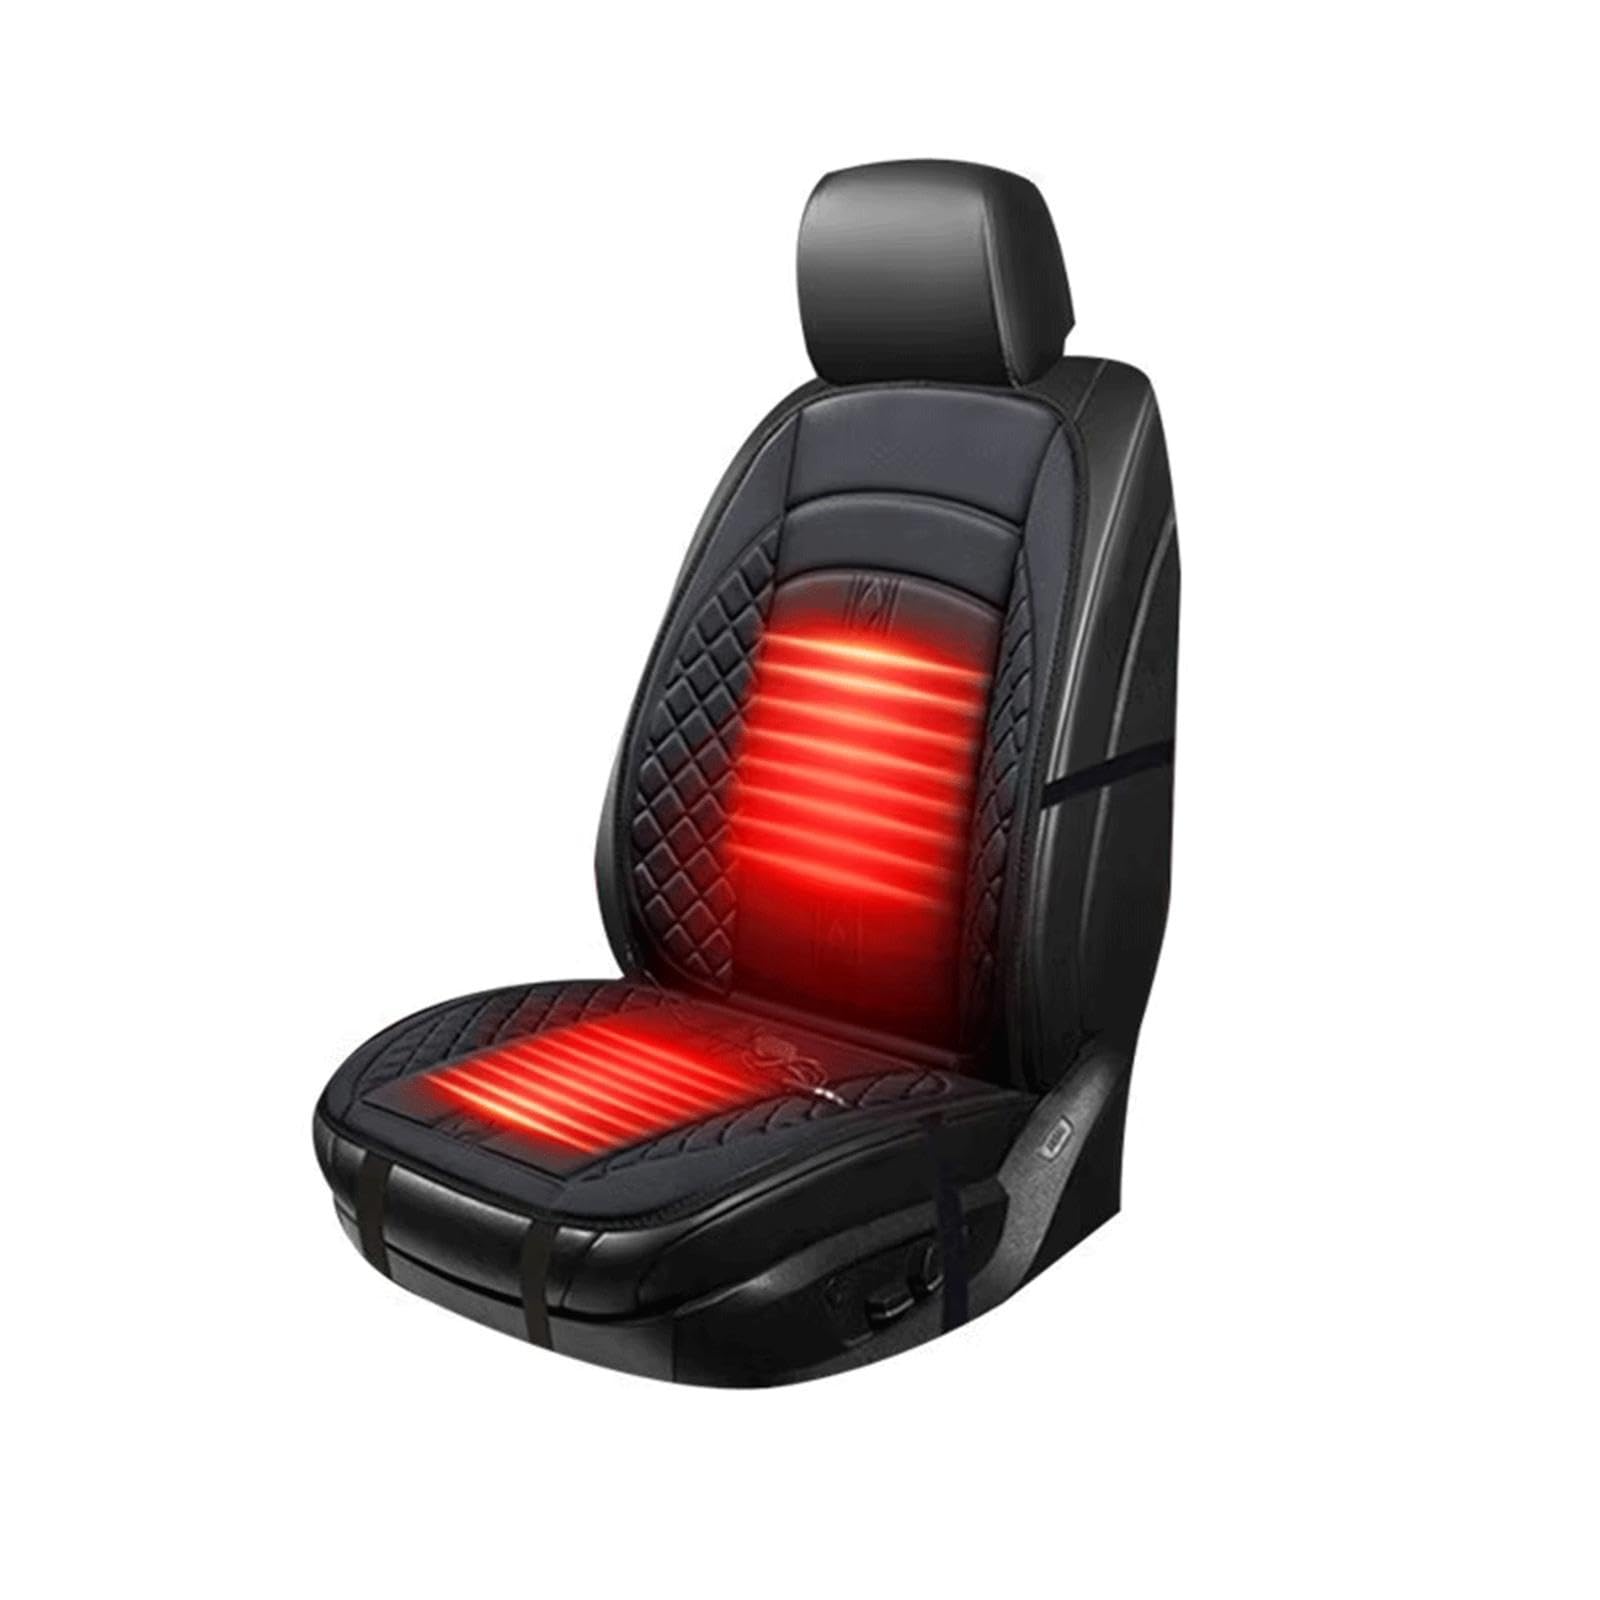 Sitzheizung Auflage, Intelligente Steuerung,12v Autositzschoner Fahrersitz Bequem Universell Passend für Fahrersitz -1225,1PCS von BesBet